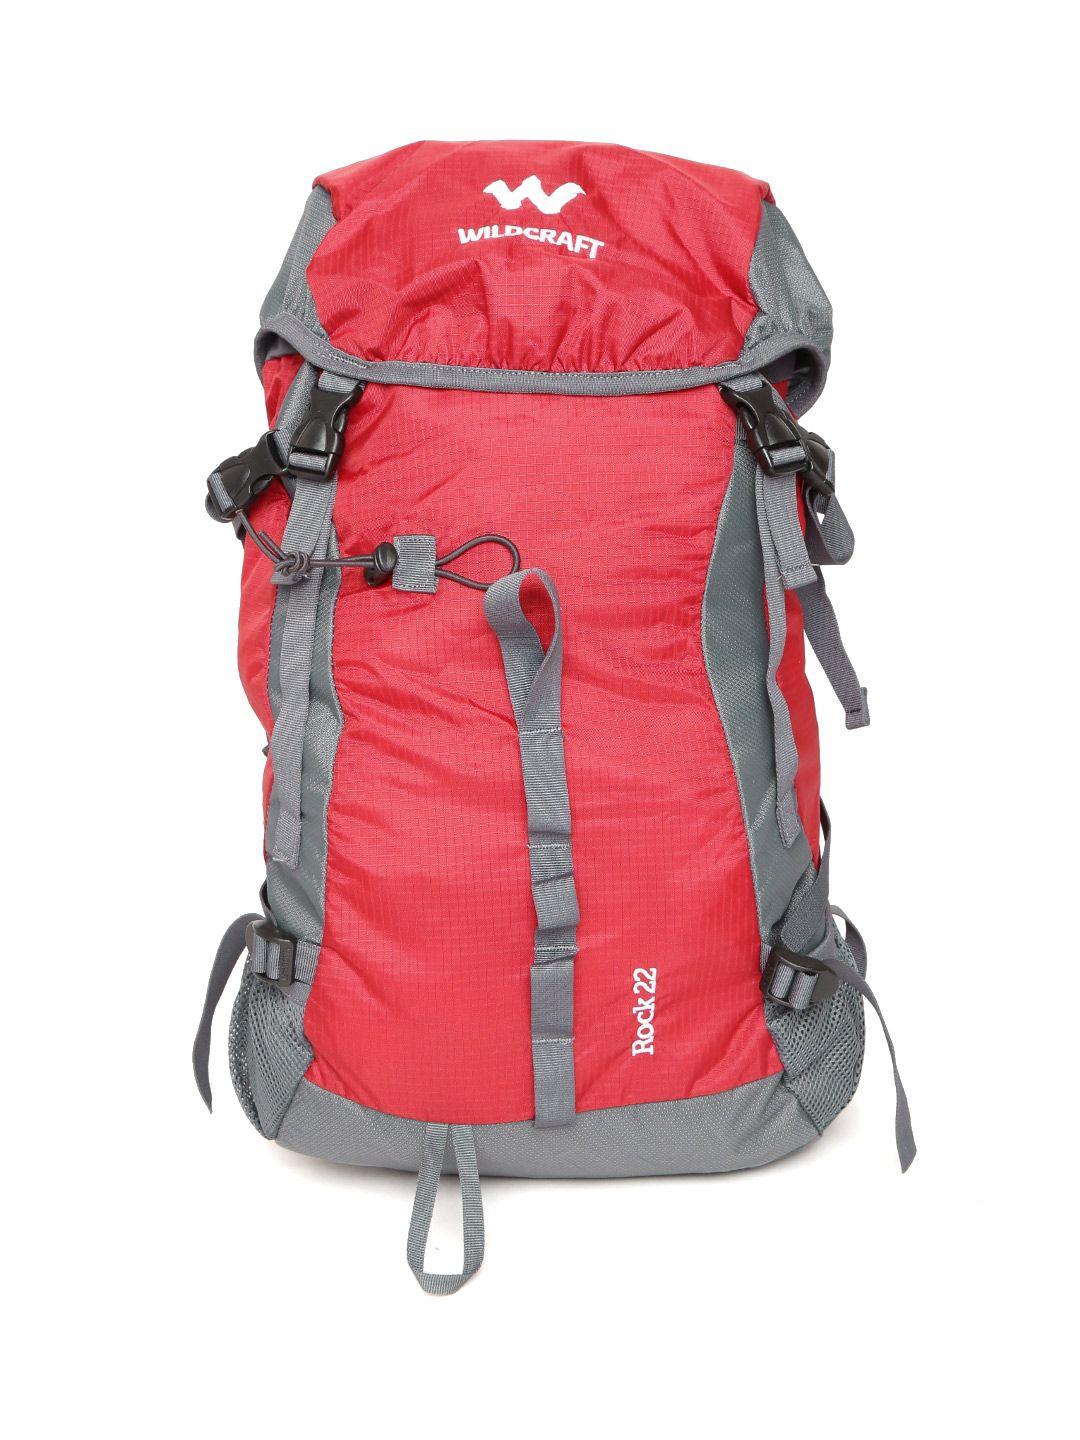 wildcraft unisex red rock rucksack